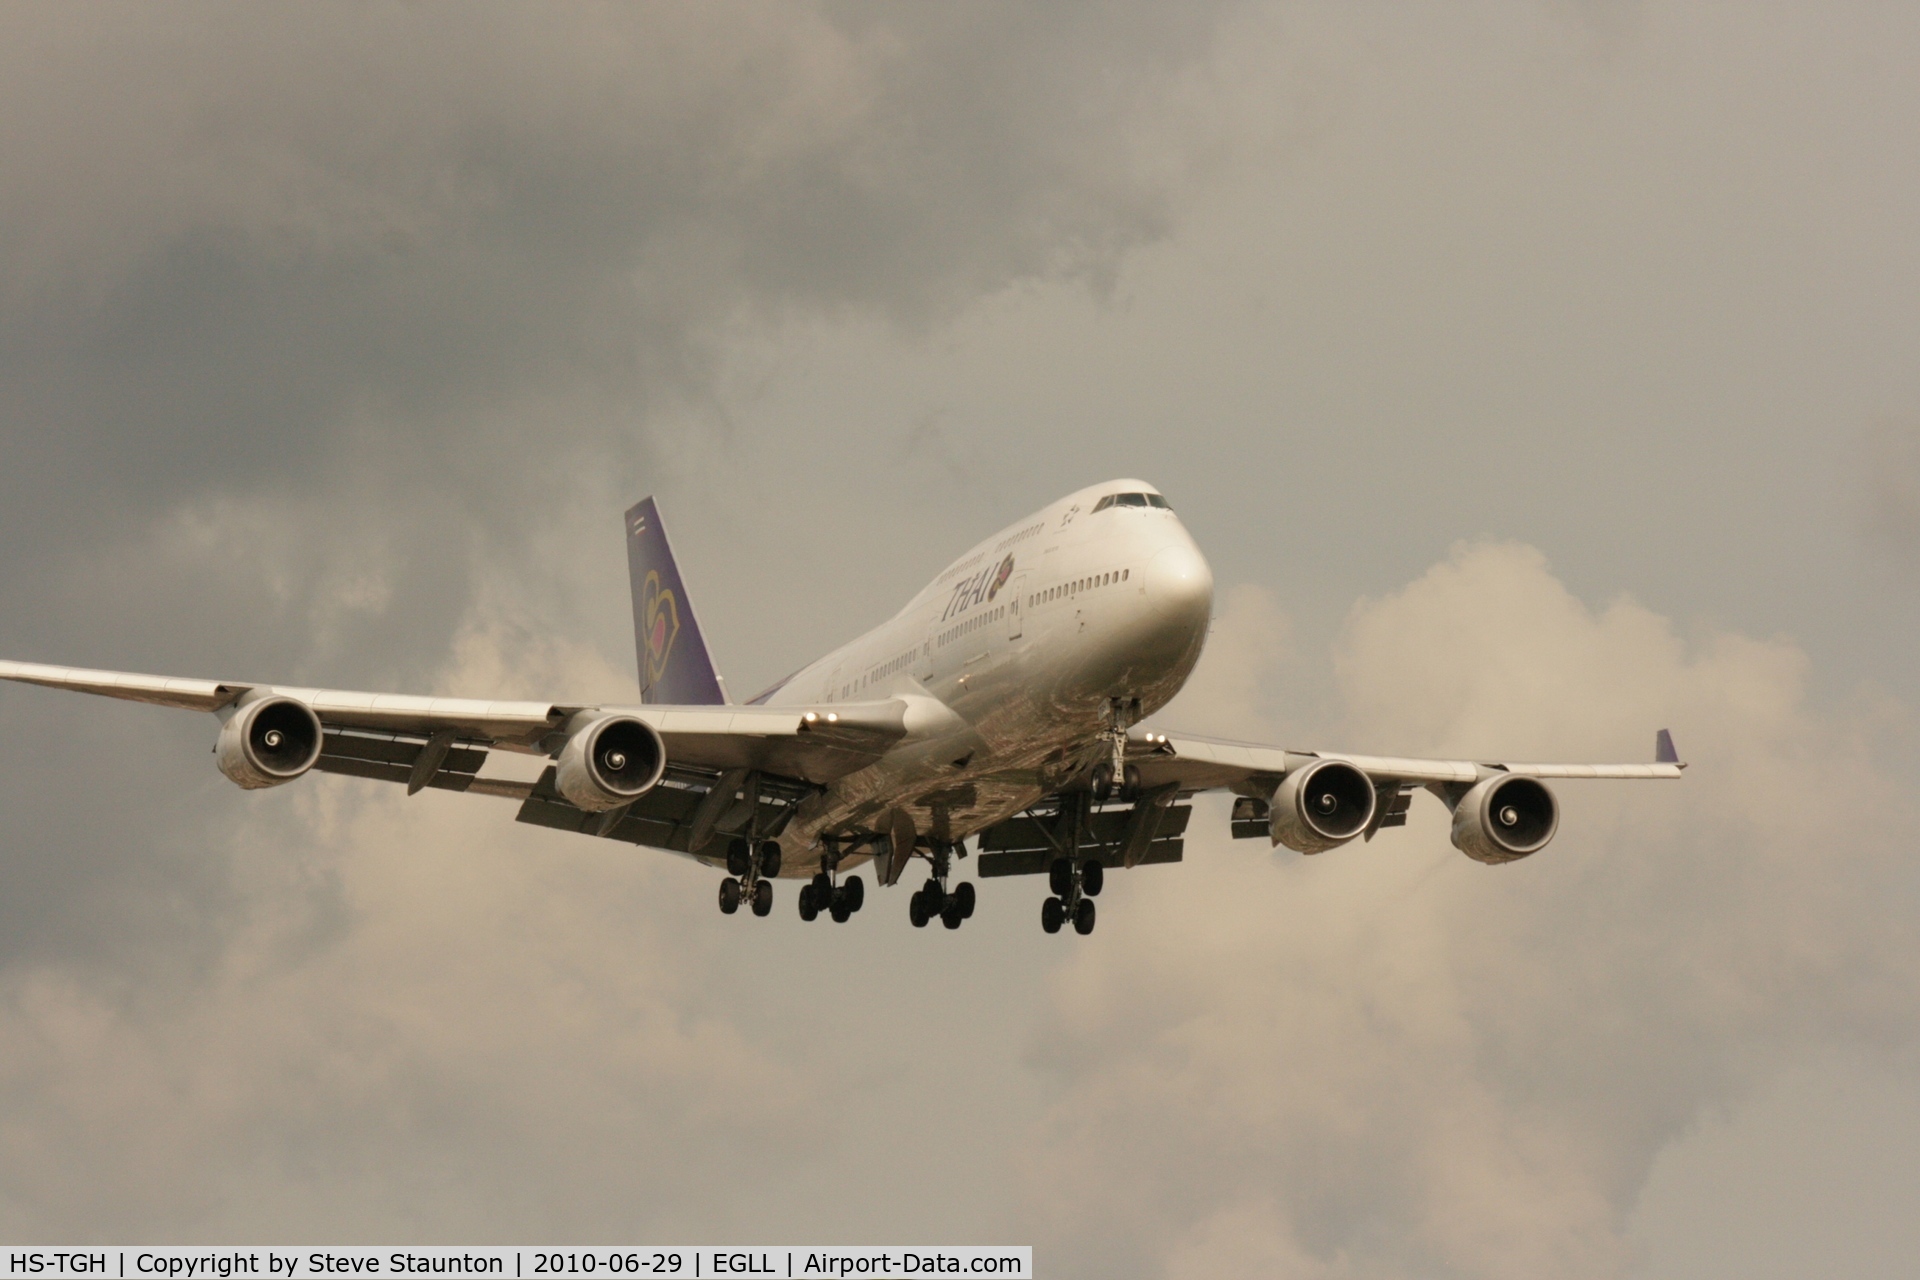 HS-TGH, 1989 Boeing 747-4D7 C/N 24458, Taken at Heathrow Airport, June 2010